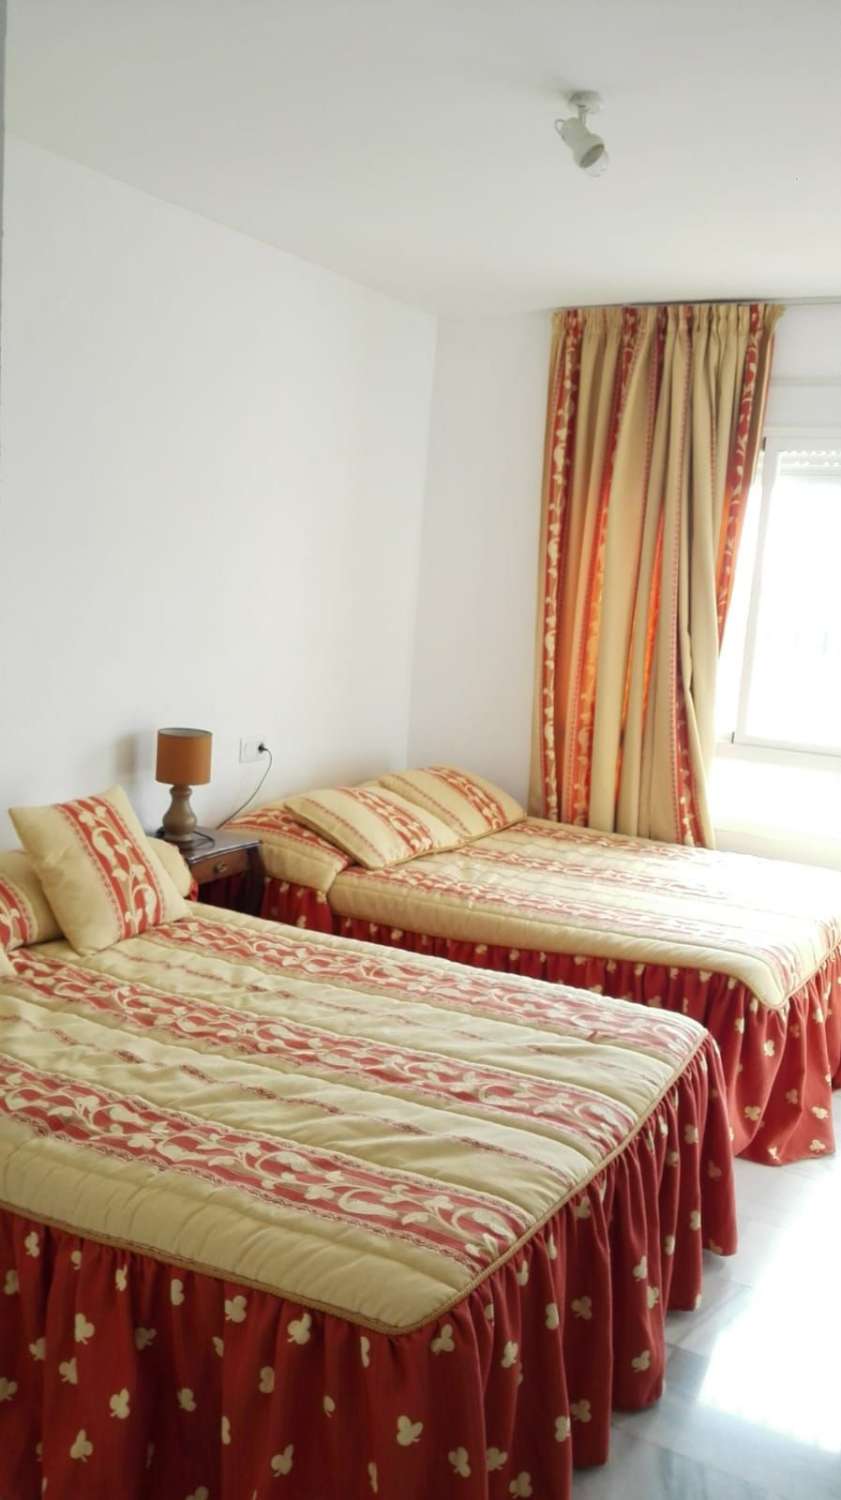 4 BEDROOM TOWNHOUSE FOR RENT IN ARROYO DE LA MIEL